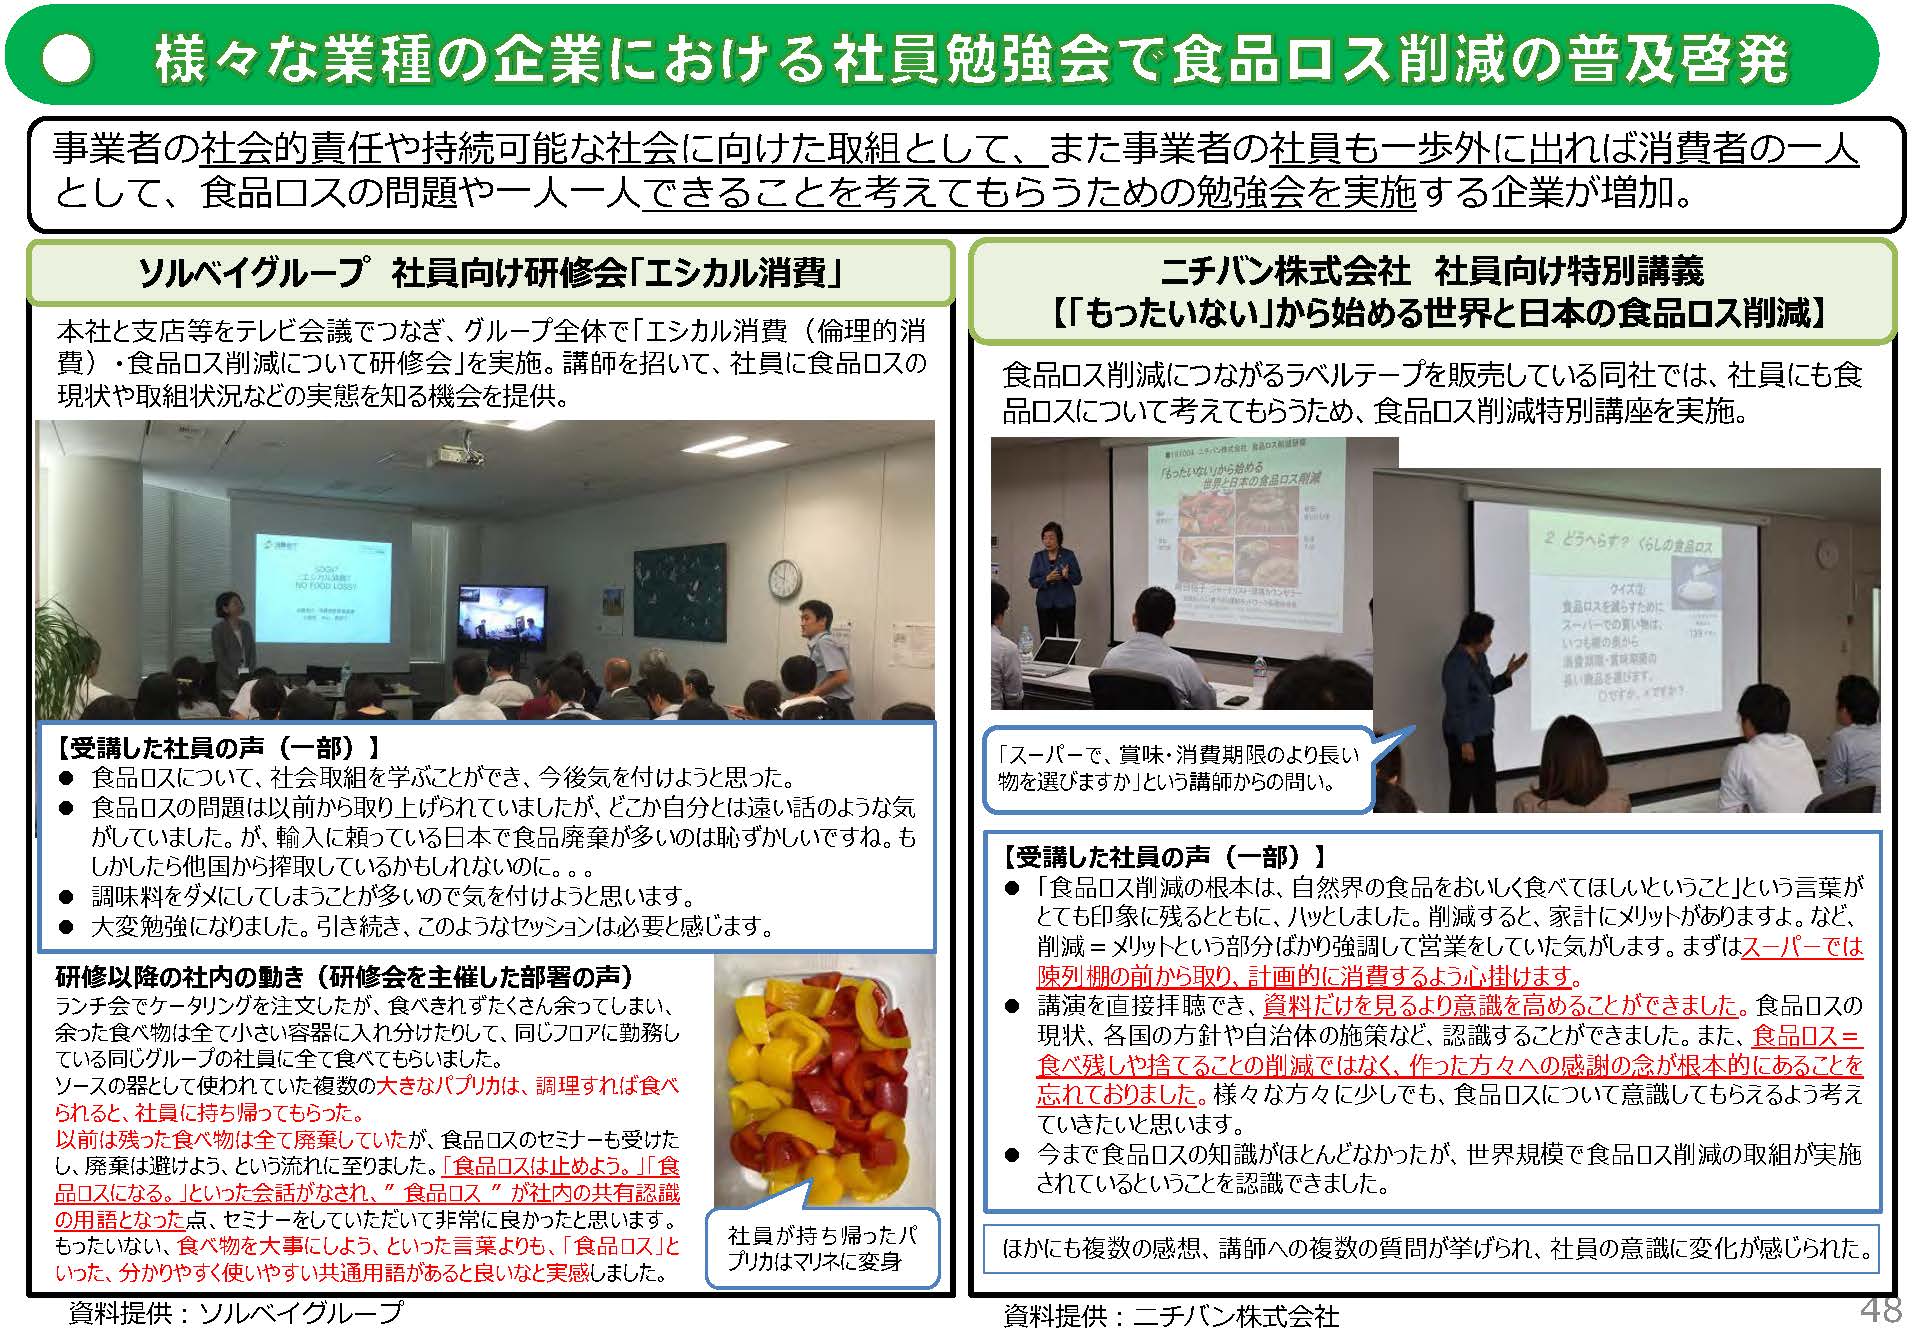 「もったいない」から始める世界と日本の食品ロス削減 社員向け特別講義の実施